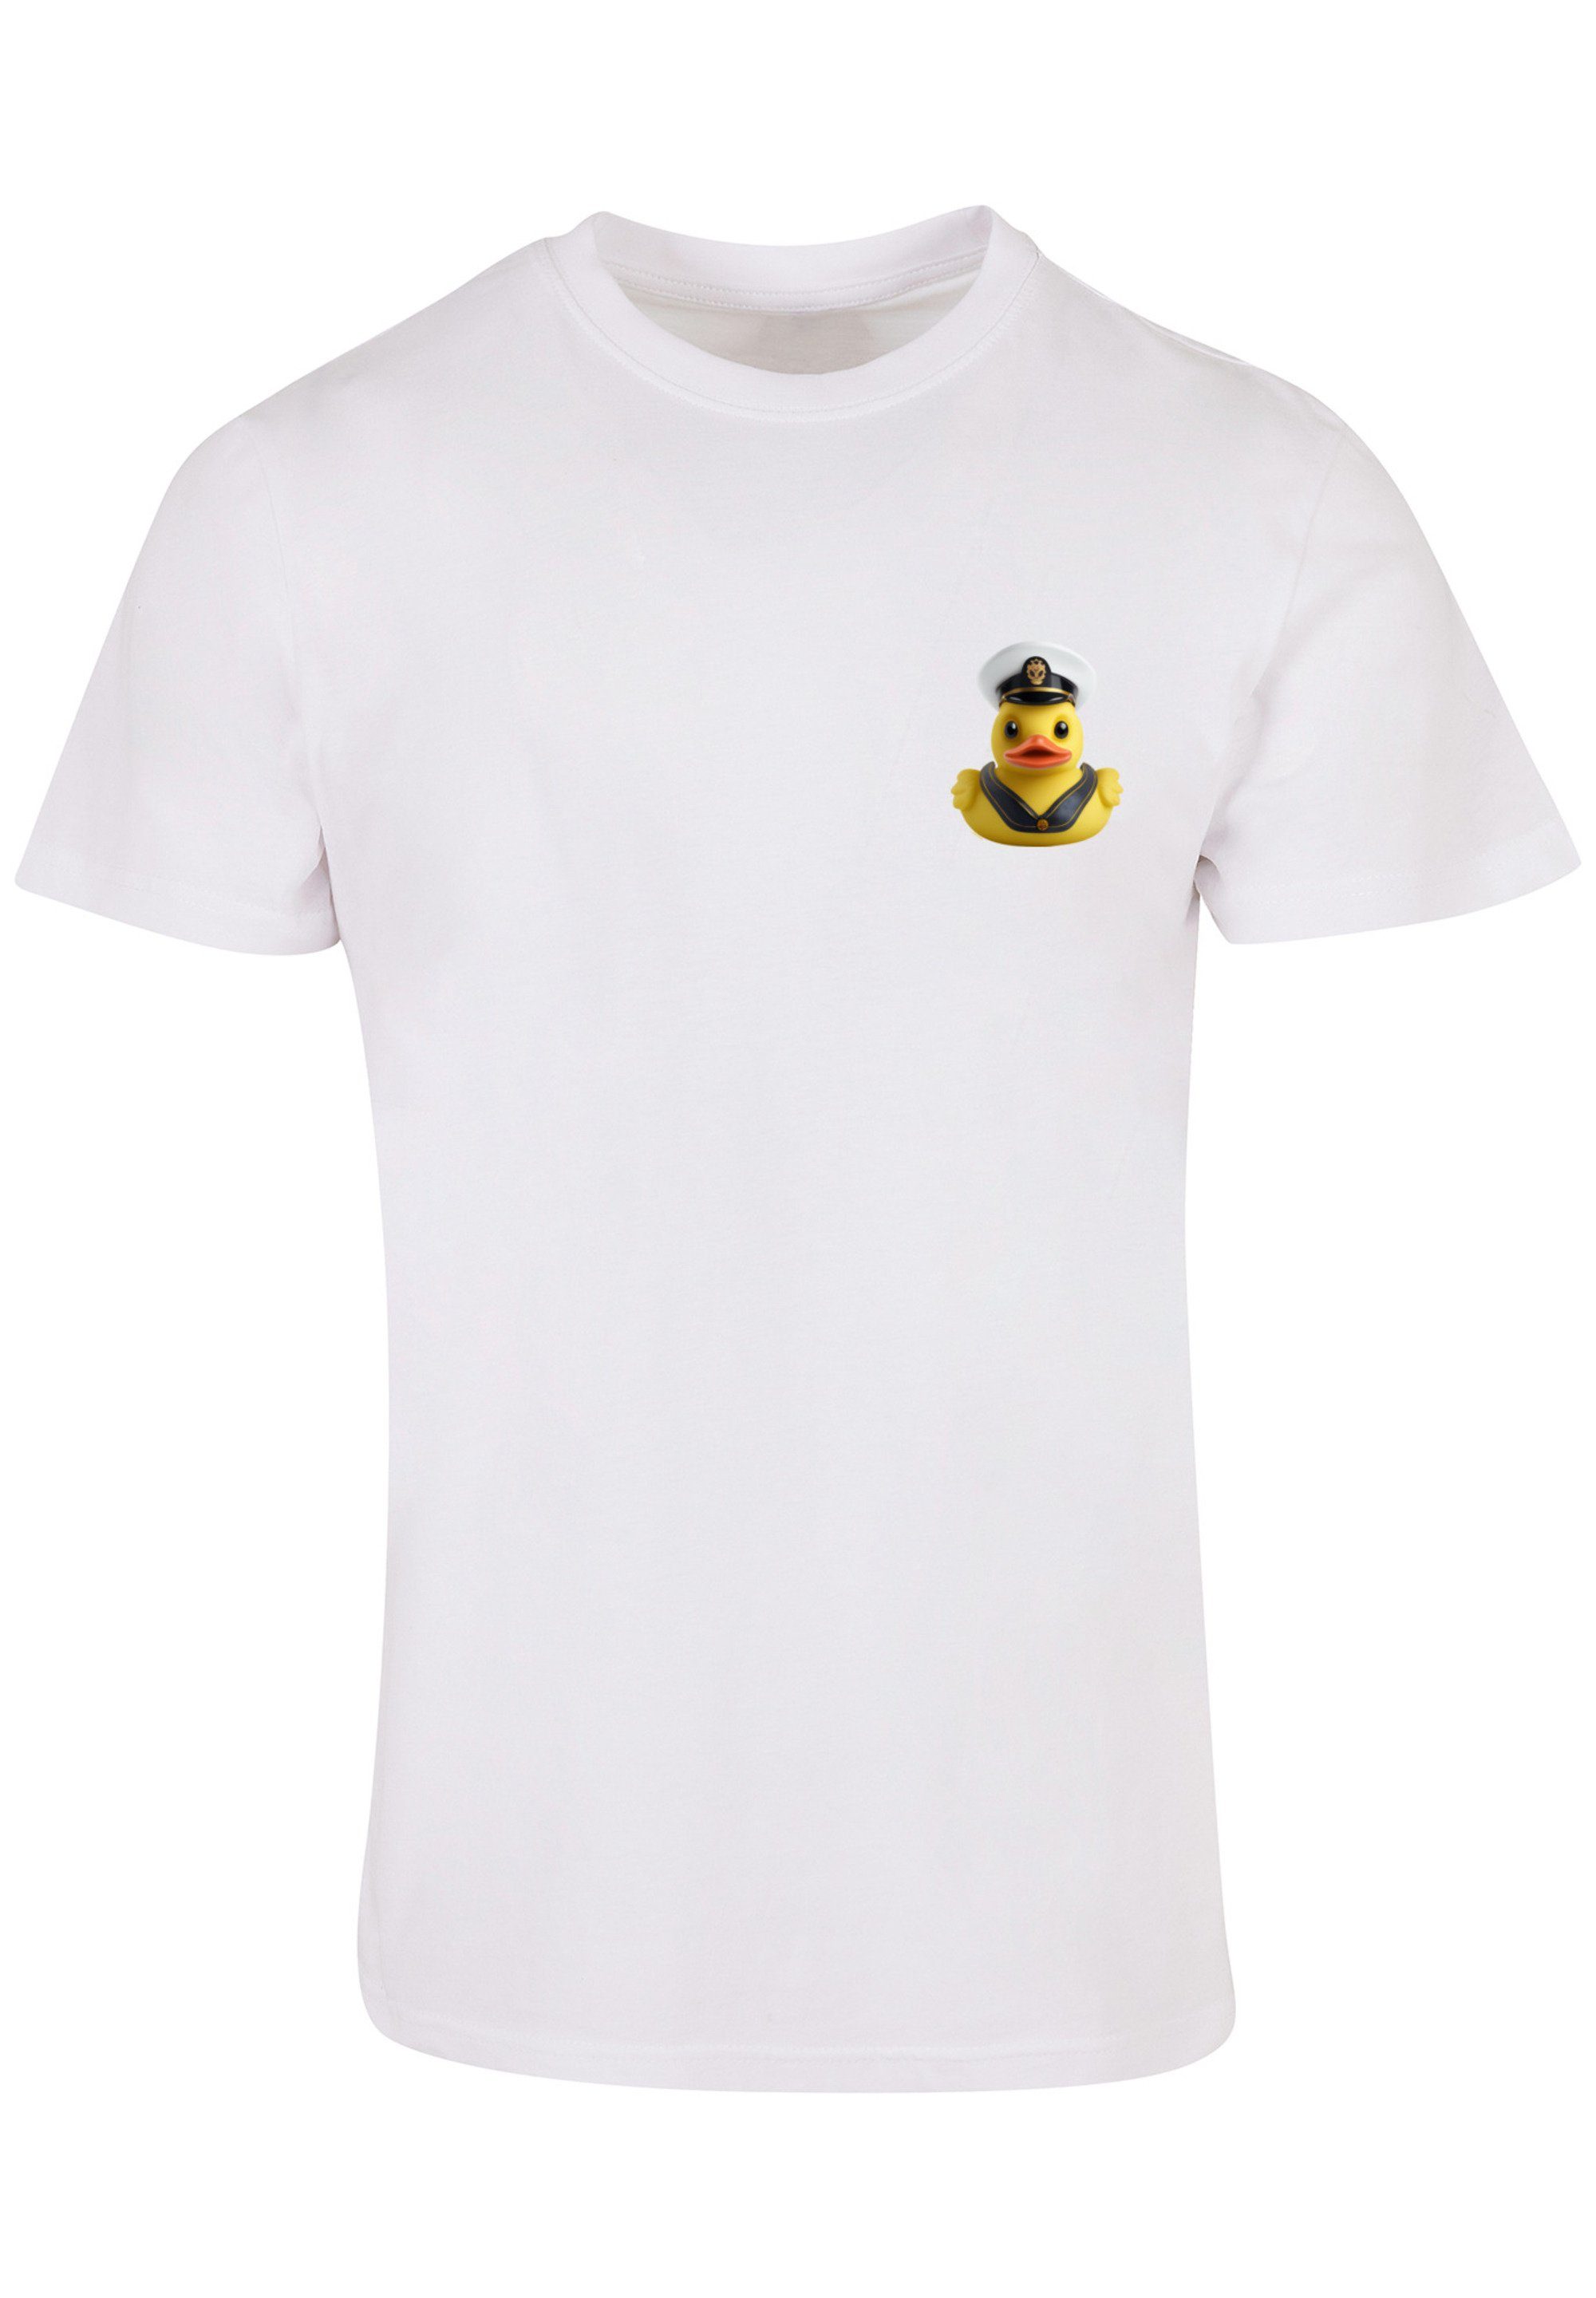 F4NT4STIC T-Shirt Rubber Duck Captain TEE UNISEX Print, Sehr weicher  Baumwollstoff mit hohem Tragekomfort